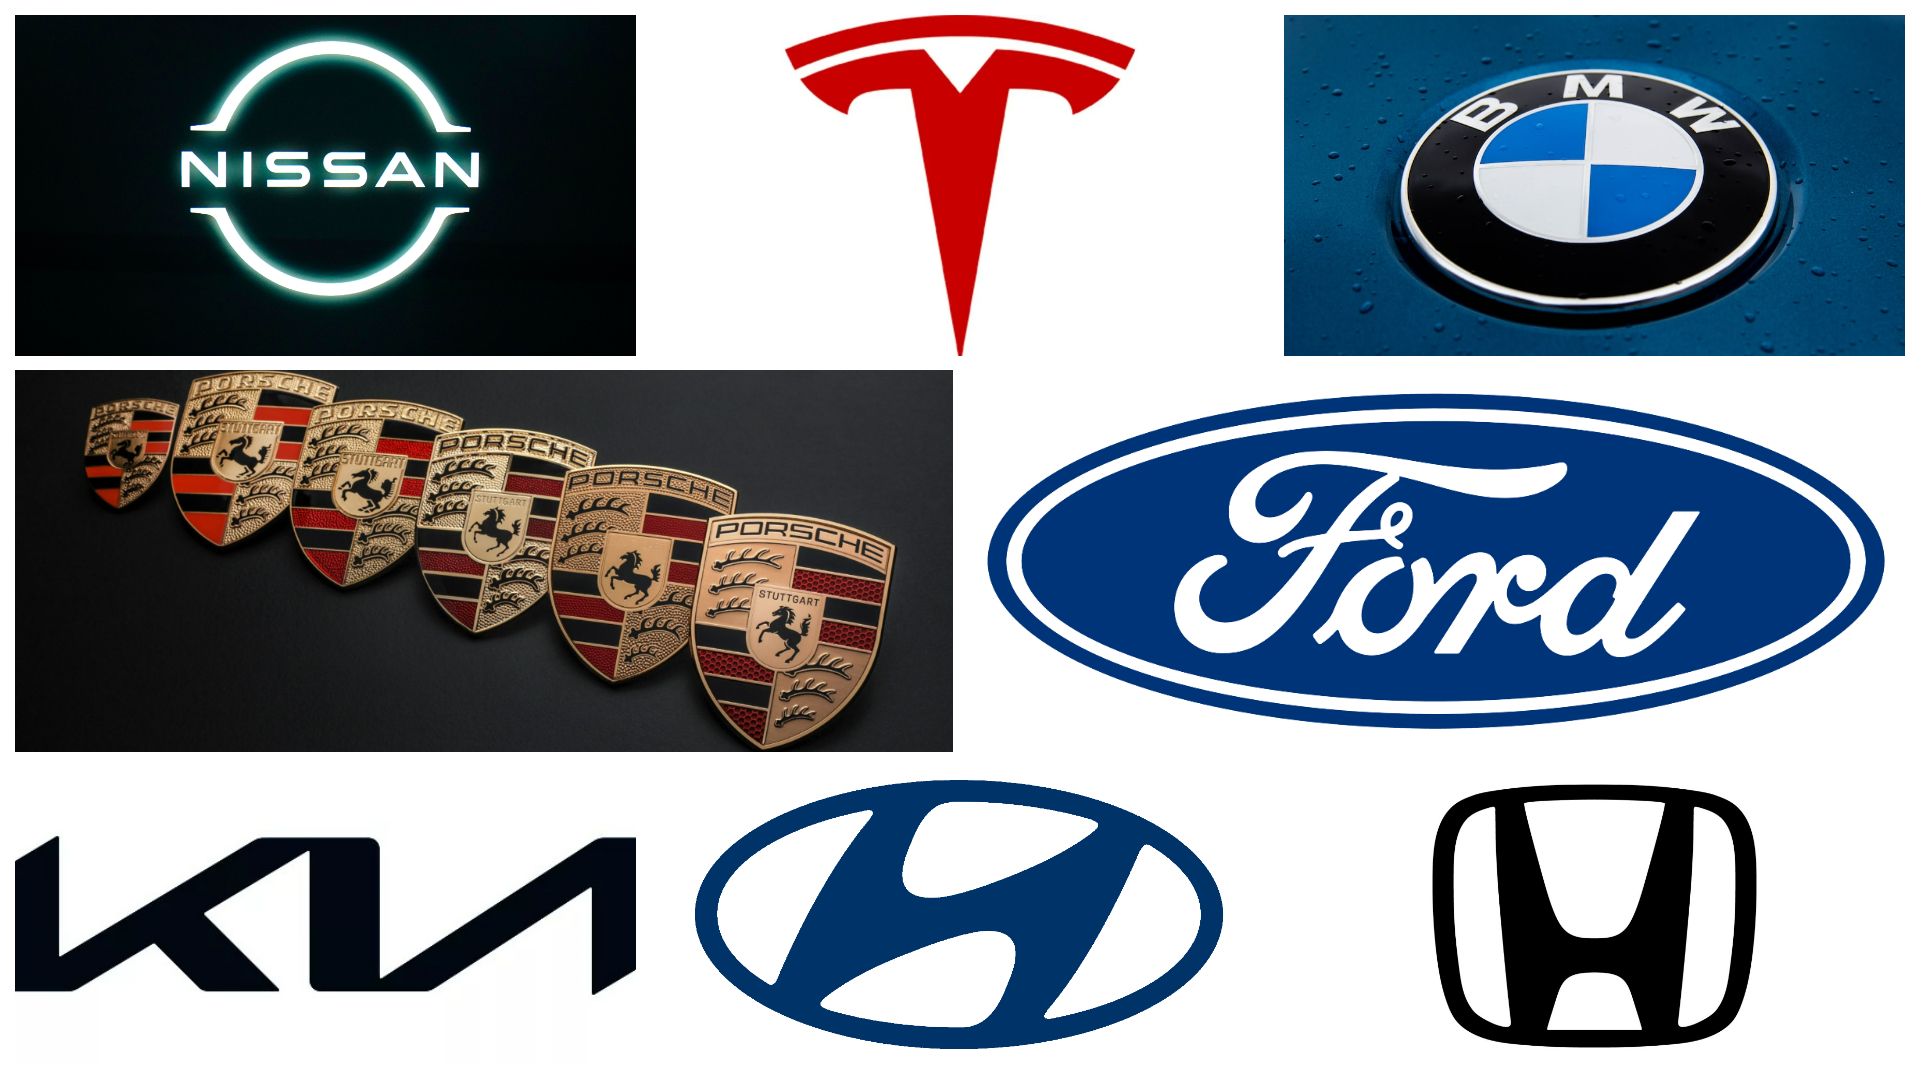 Best Car Brands